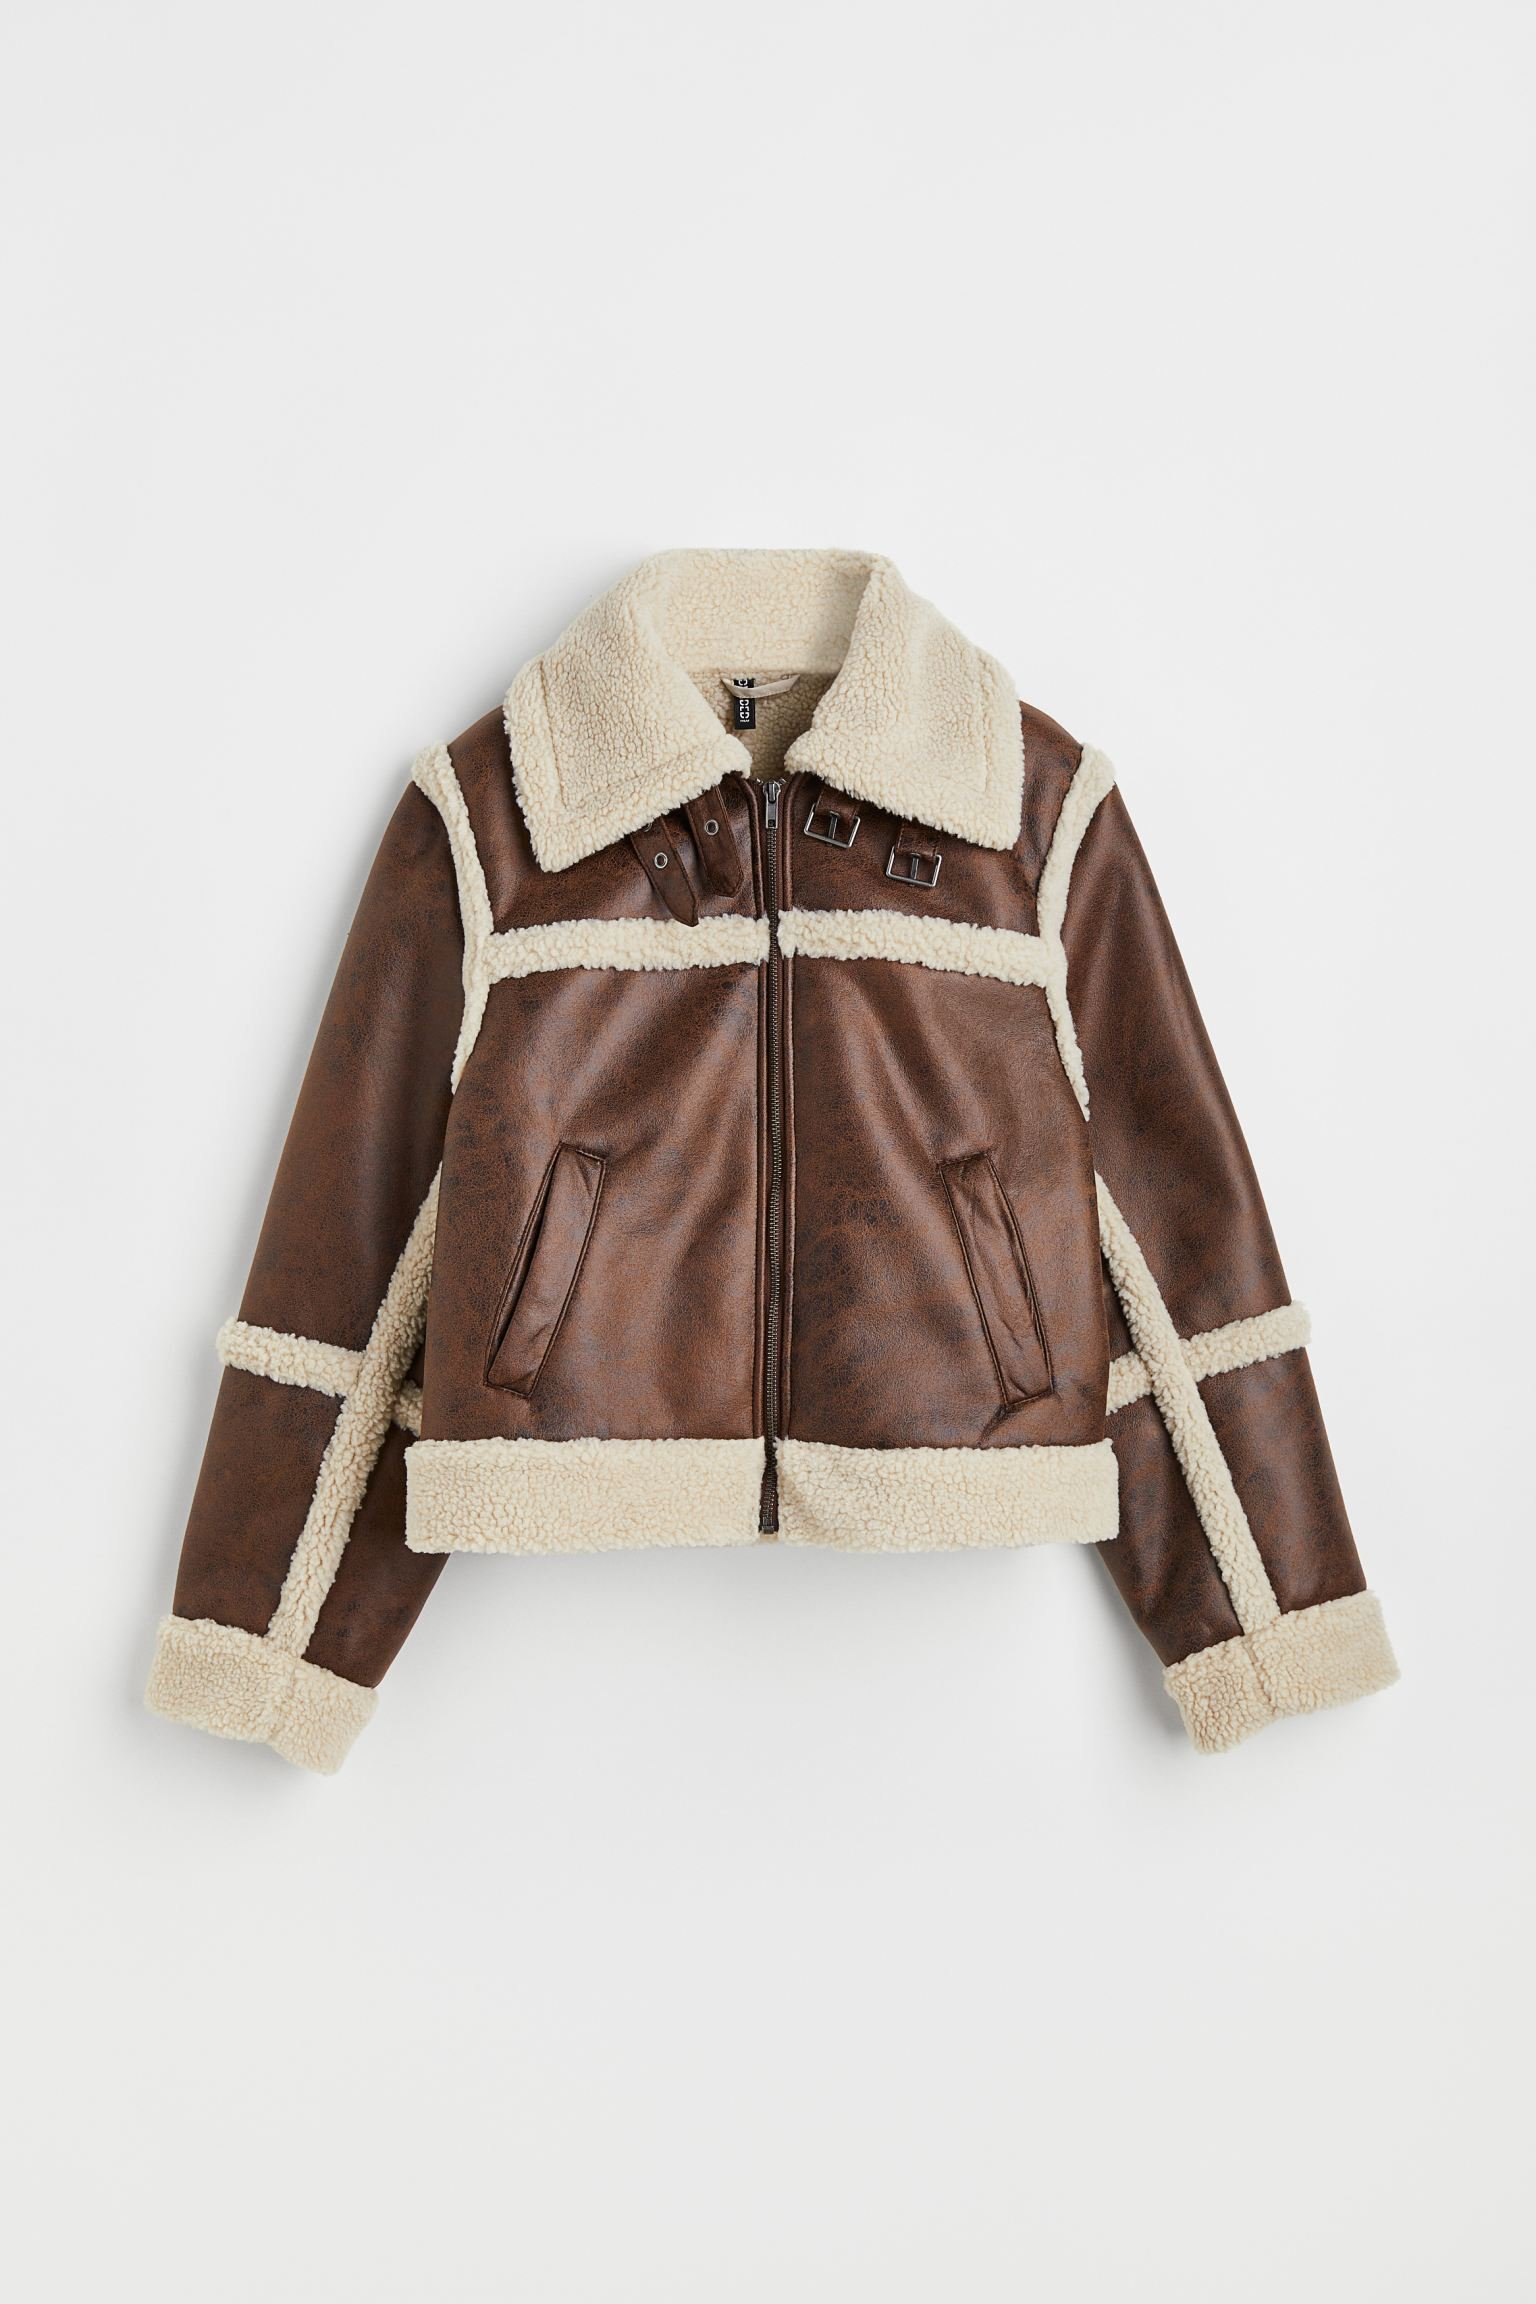 H&M Teddy-Lined Jacket in Dark BrownLight Beige.jpg